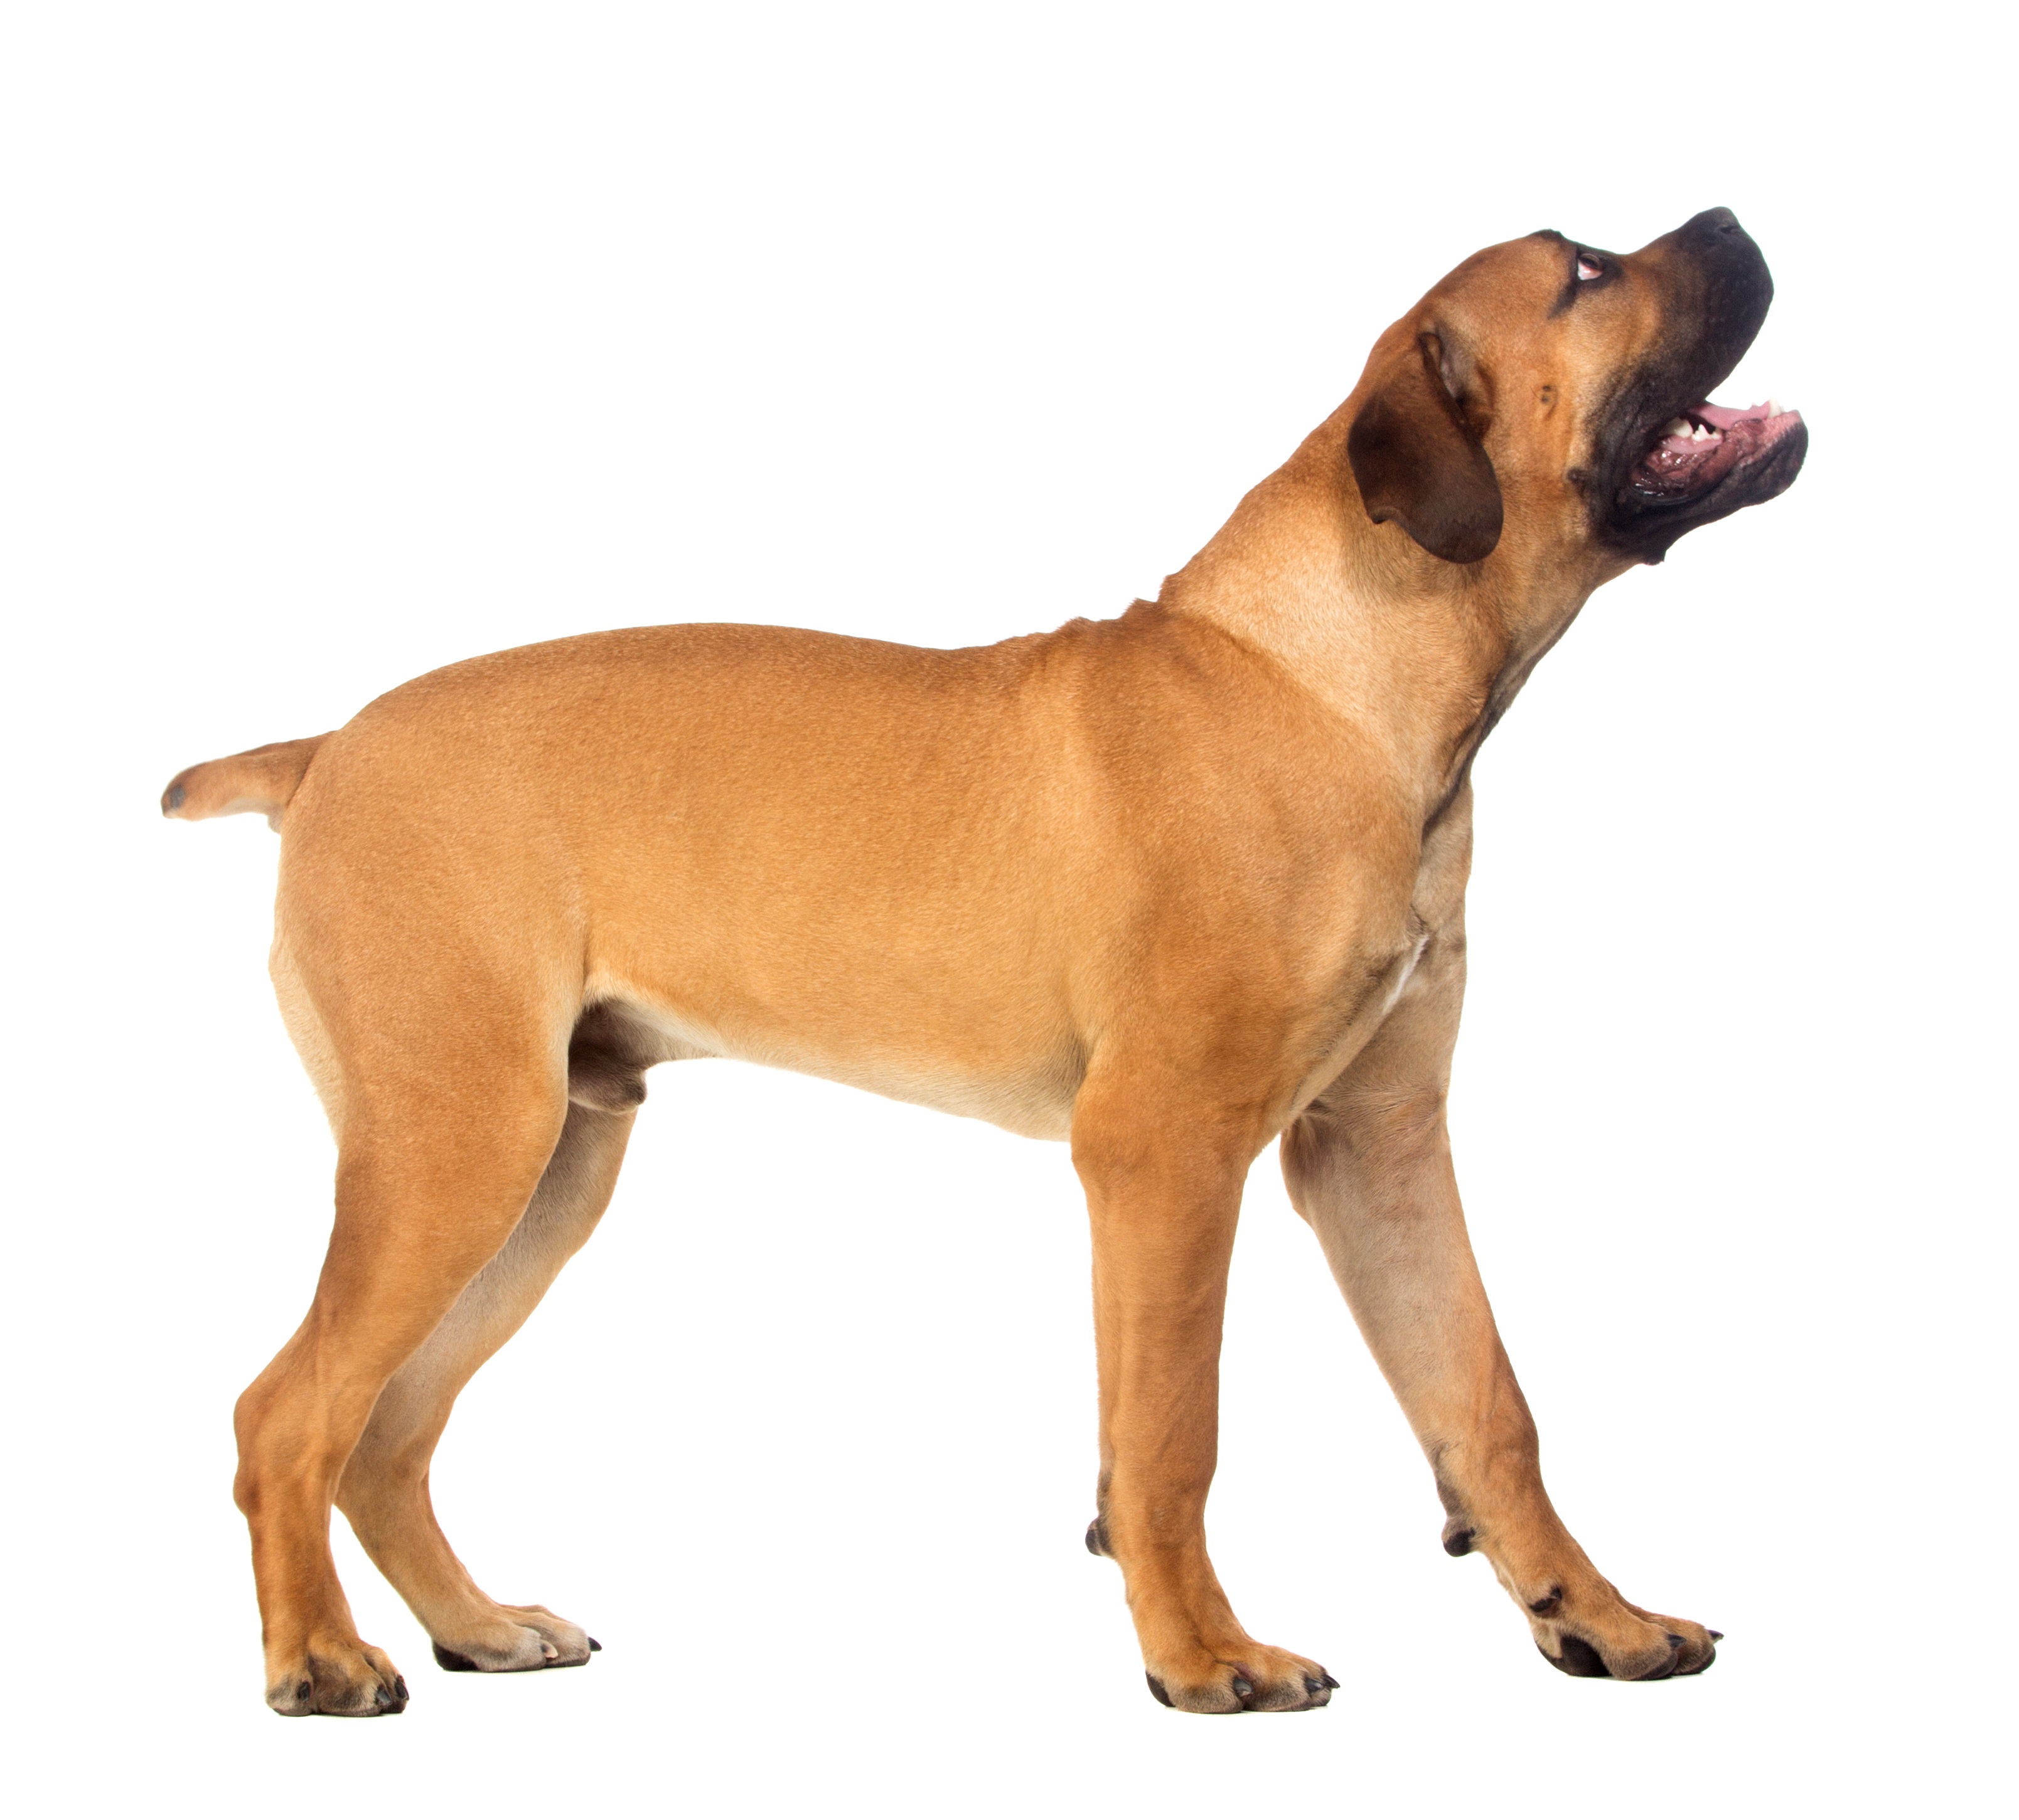 Boerboel Dog Breed Information & Pictures â€“ Dogtime